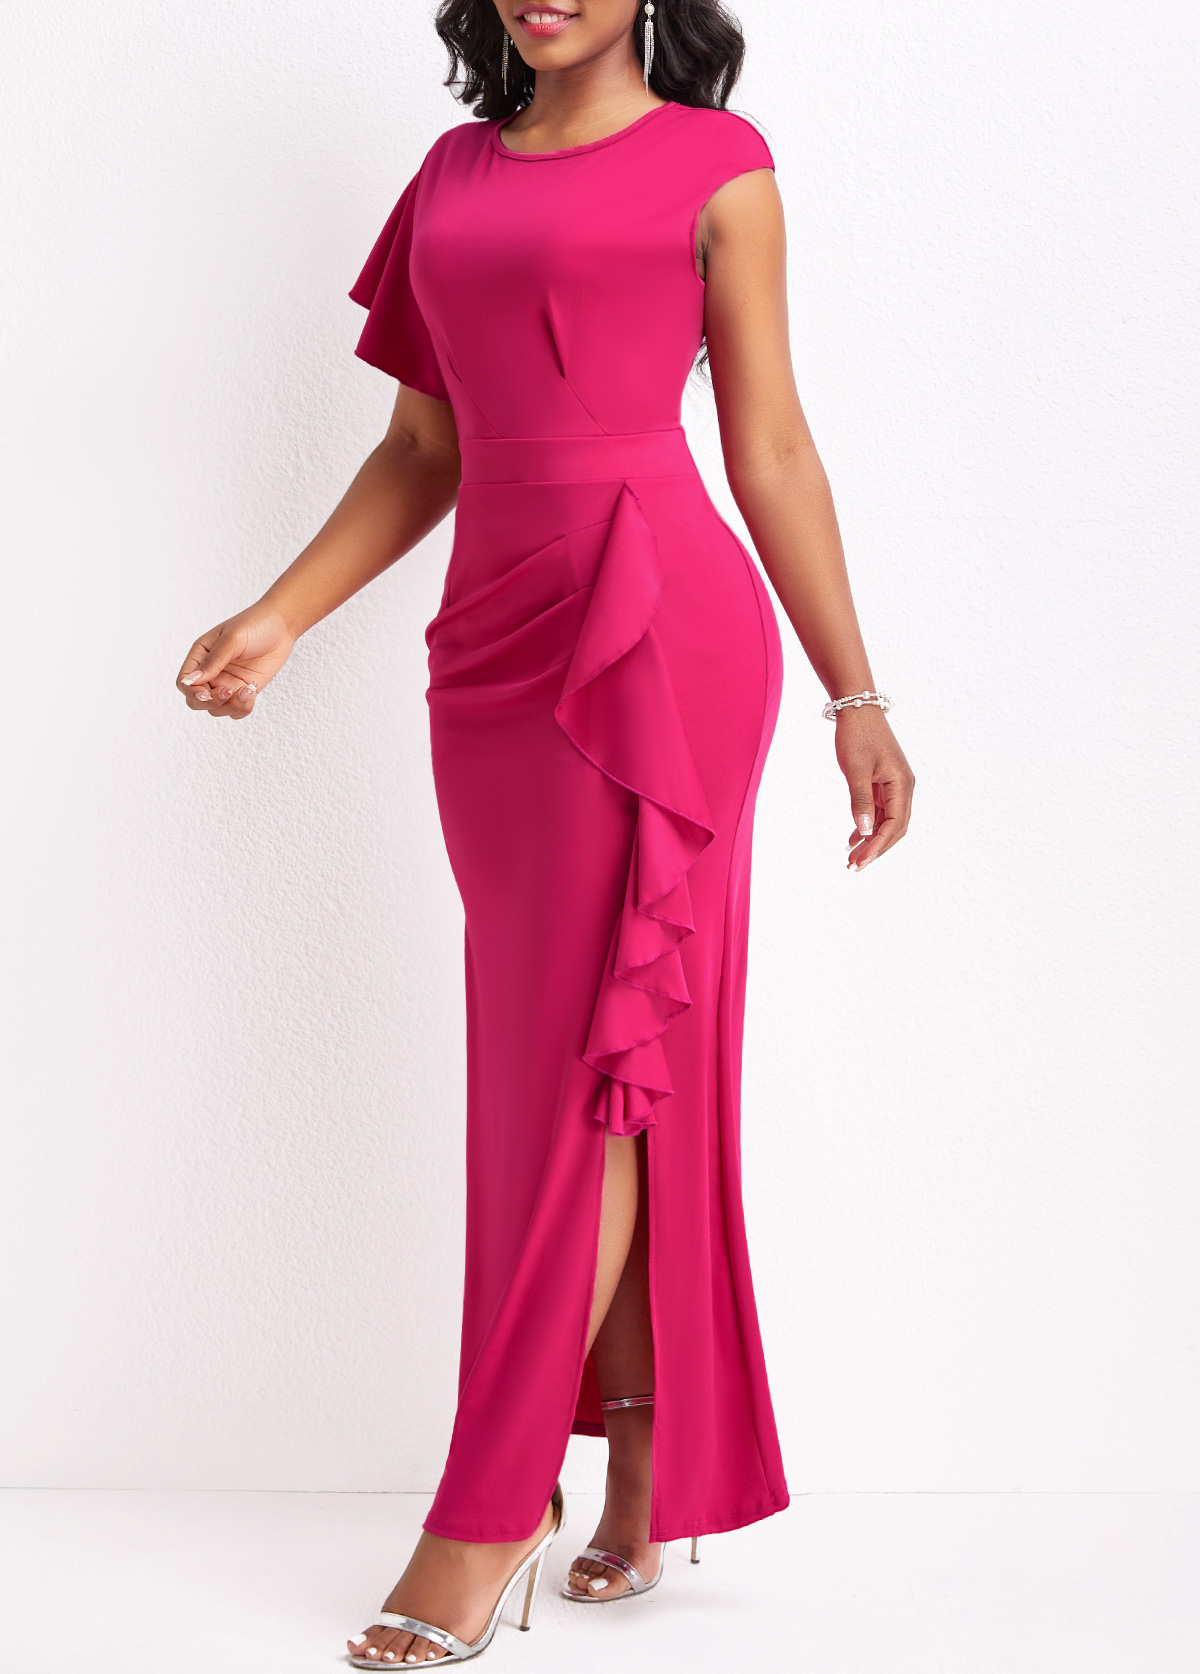 Hot Pink Ruffle Short Sleeve Dress